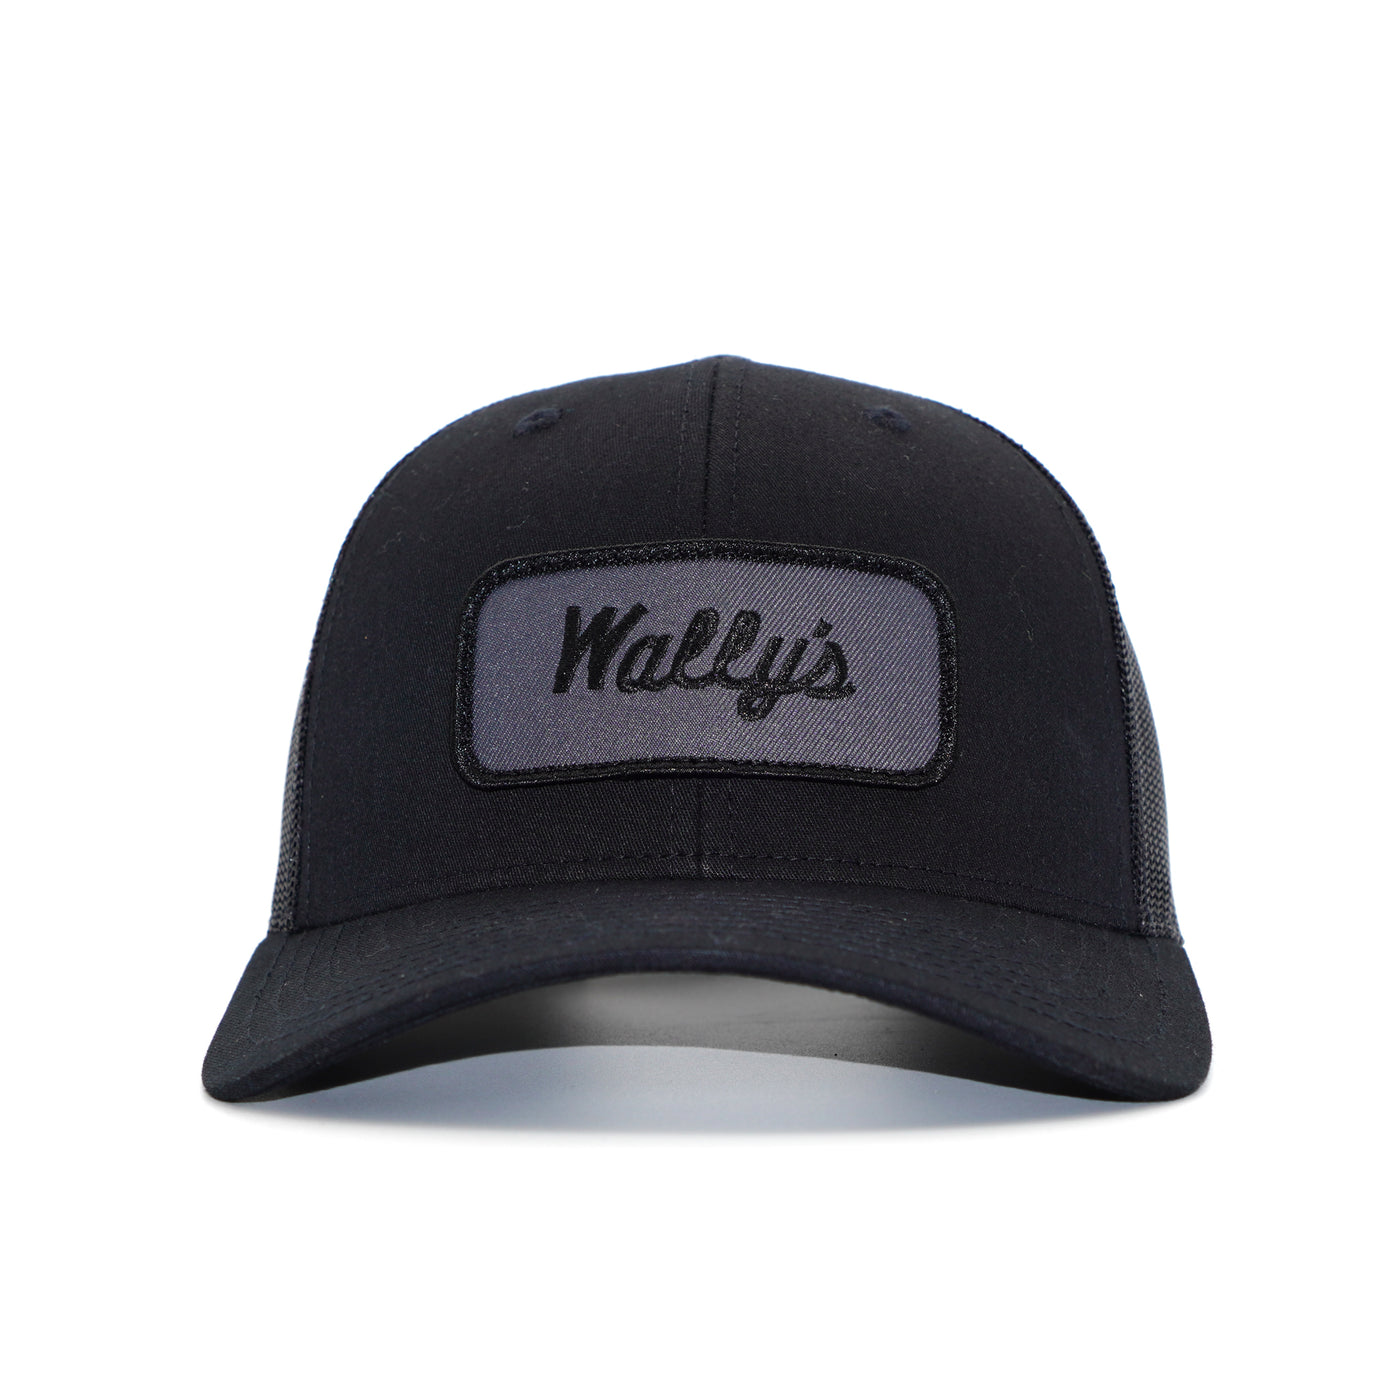 Wally's Mechanic Black Trucker Hat